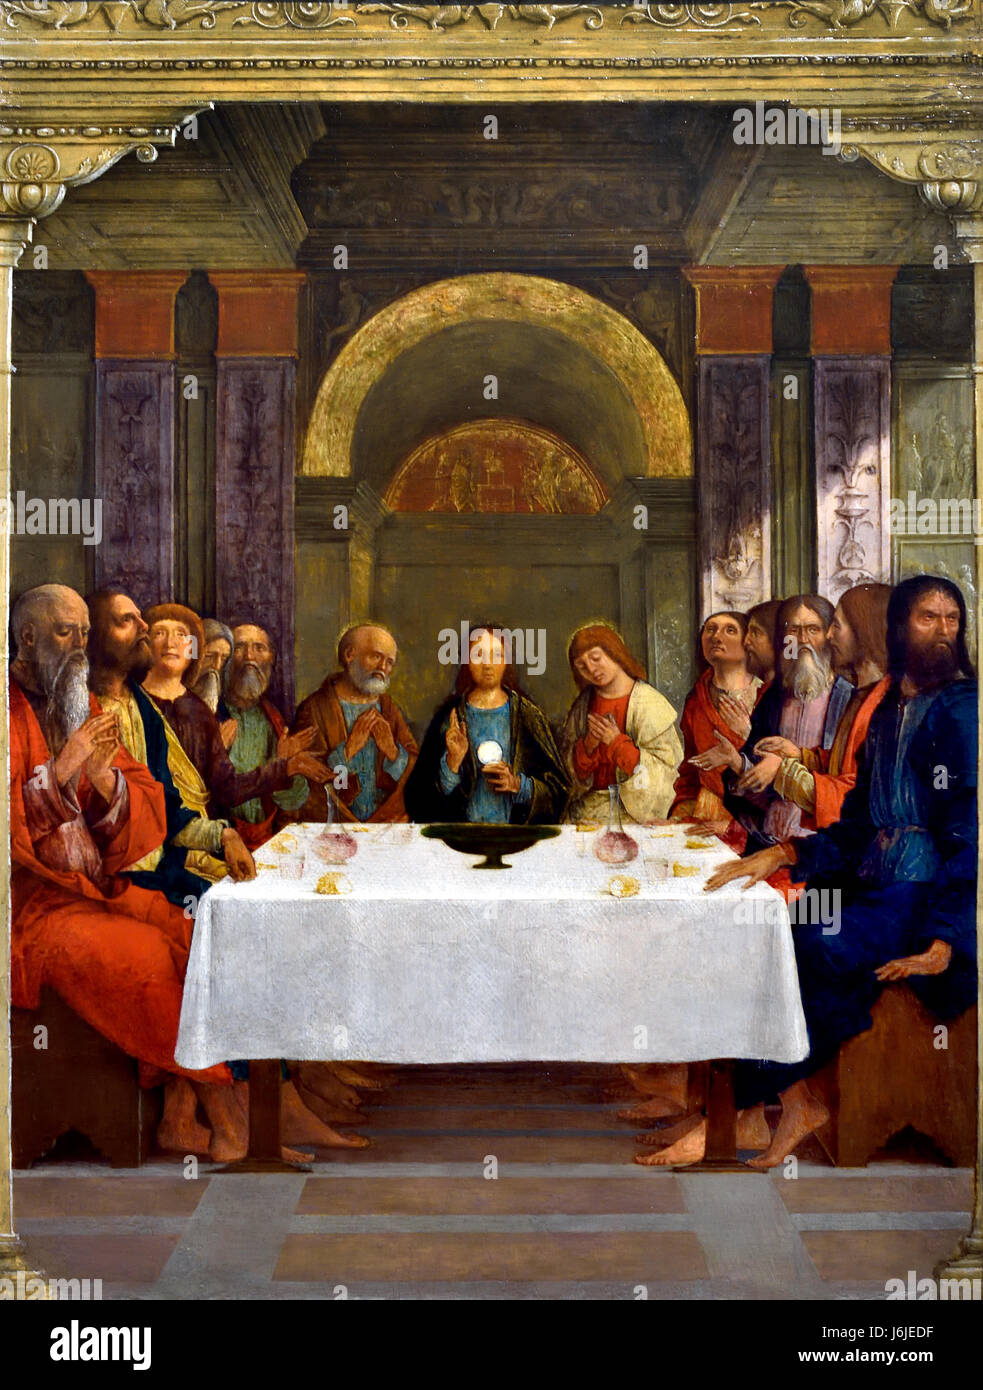 L'Institution de l'Eucharistie 1490 Ercole de' Roberti 1479 active est mort 1496 Italie italien ( Le Christ est montré à la Dernière Cène en tenant le pain eucharistique. Probablement peint à Ferrare, dans les années 1490 comme la porte d'une demeure pour le pain et le vin de la Messe ) Banque D'Images